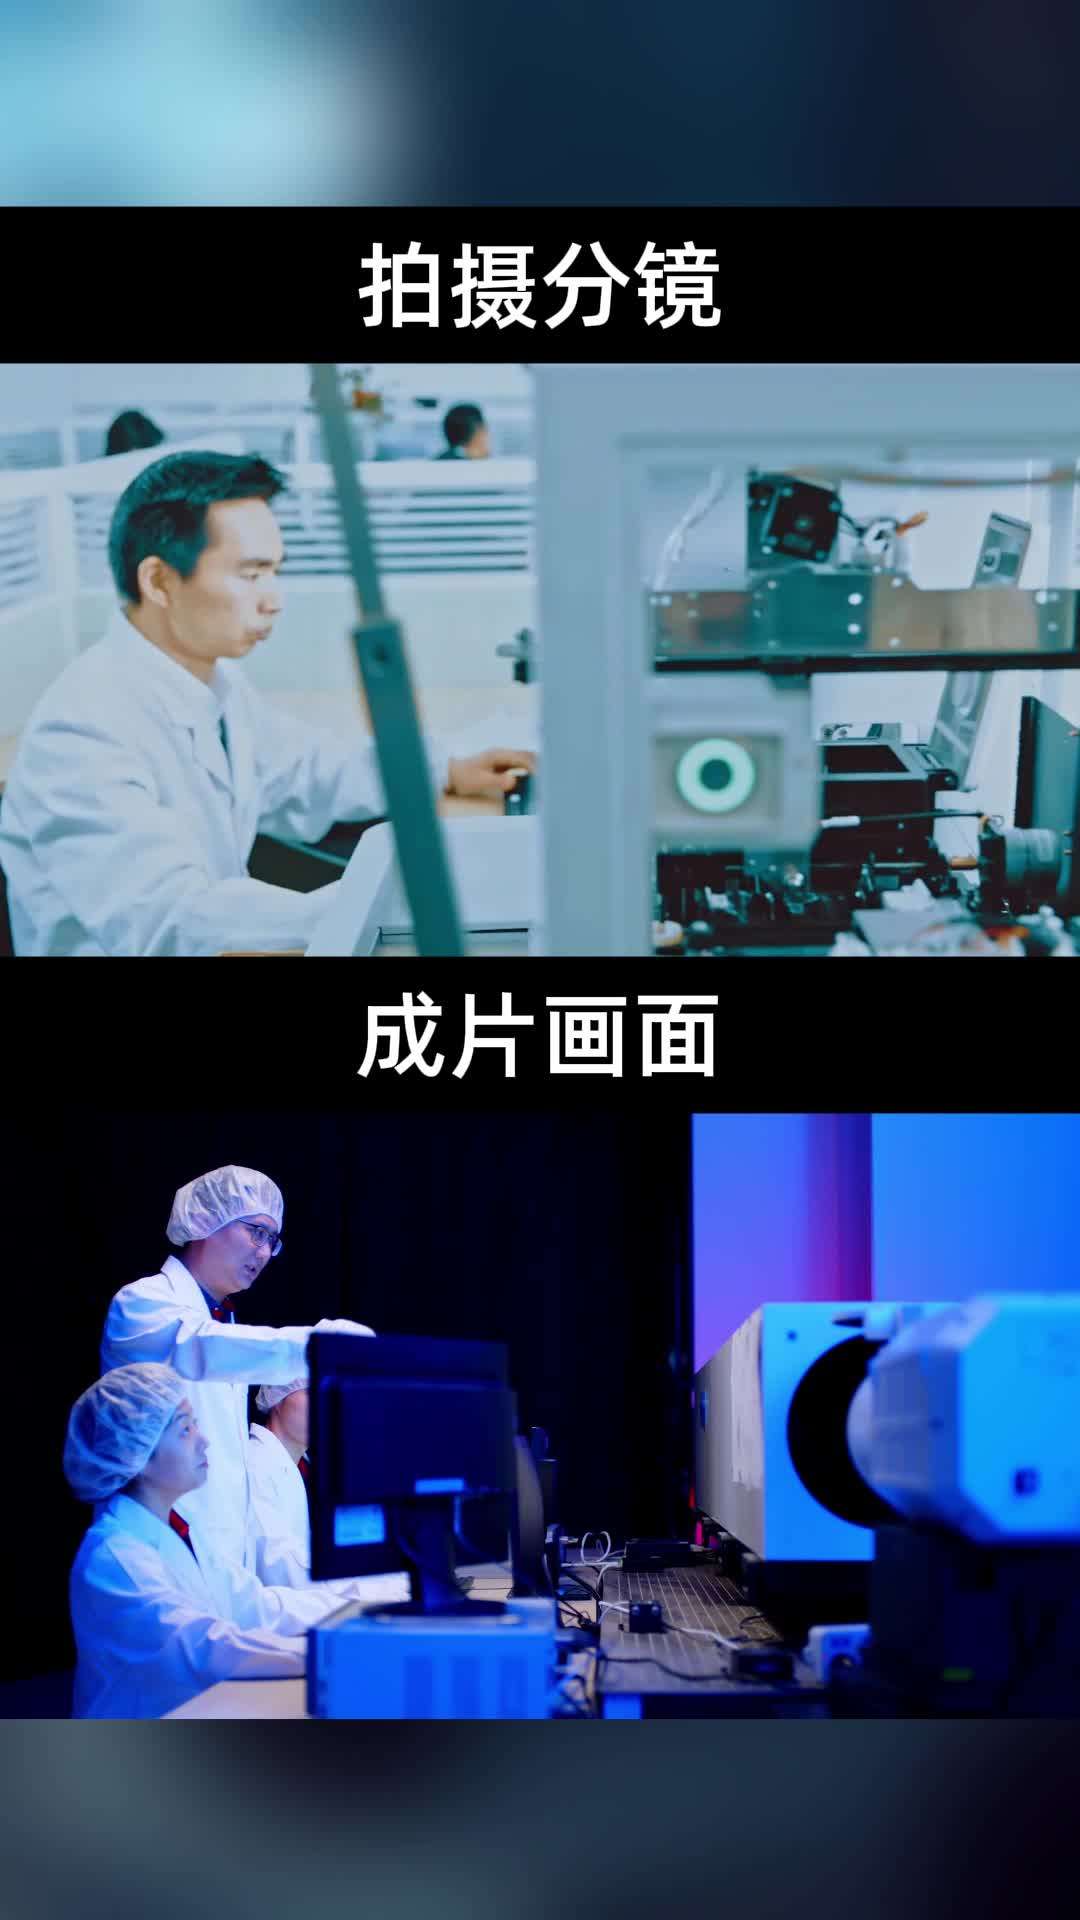 红外光学企业拍摄分镜思路分享丨富吉瑞×光年映画丨IPO路演企业宣传片